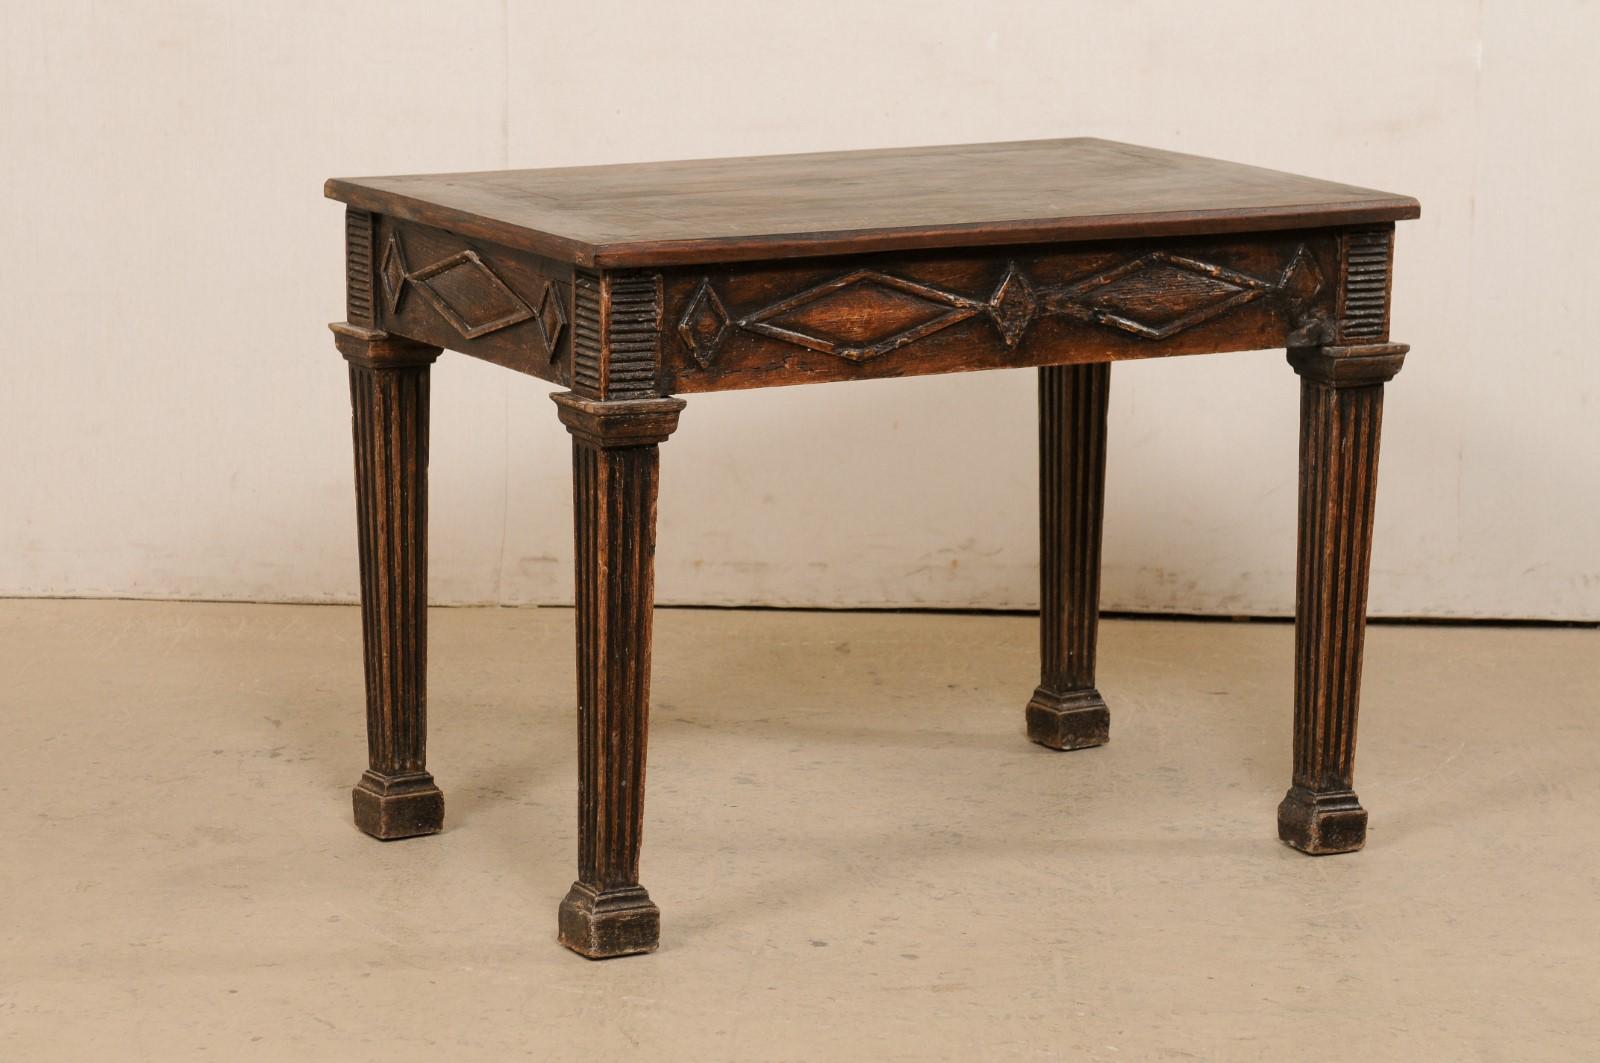 Ein italienischer, schön geschnitzter Beistelltisch aus dem 19. Jahrhundert. Dieser antike Tisch aus Italien hat eine rechteckige Platte mit einer großen, aber subtilen Rautenform in der Mitte, die über einem Sockel ruht, der mit dicken, erhabenen,